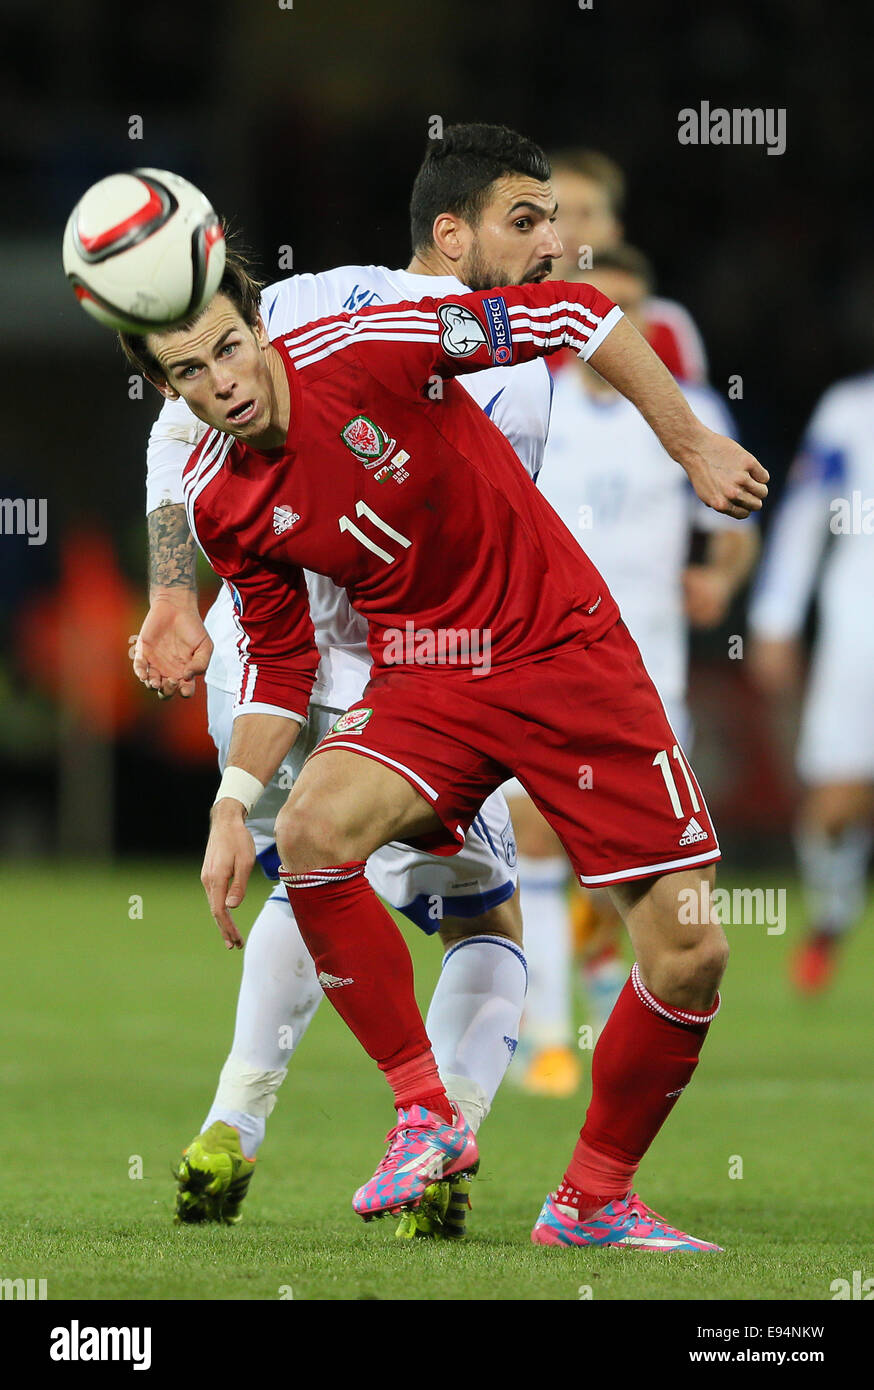 Cardiff, Royaume-Uni. 13 Oct, 2014. Gareth Bale de galles - Euro 2016 Qualifications - Pays de Galles contre Chypre - Cardiff City Stadium - Cardiff - Pays de Galles - 13 octobre 2014 - Photo Simon Bellis/Sportimage. © csm/Alamy Live News Banque D'Images